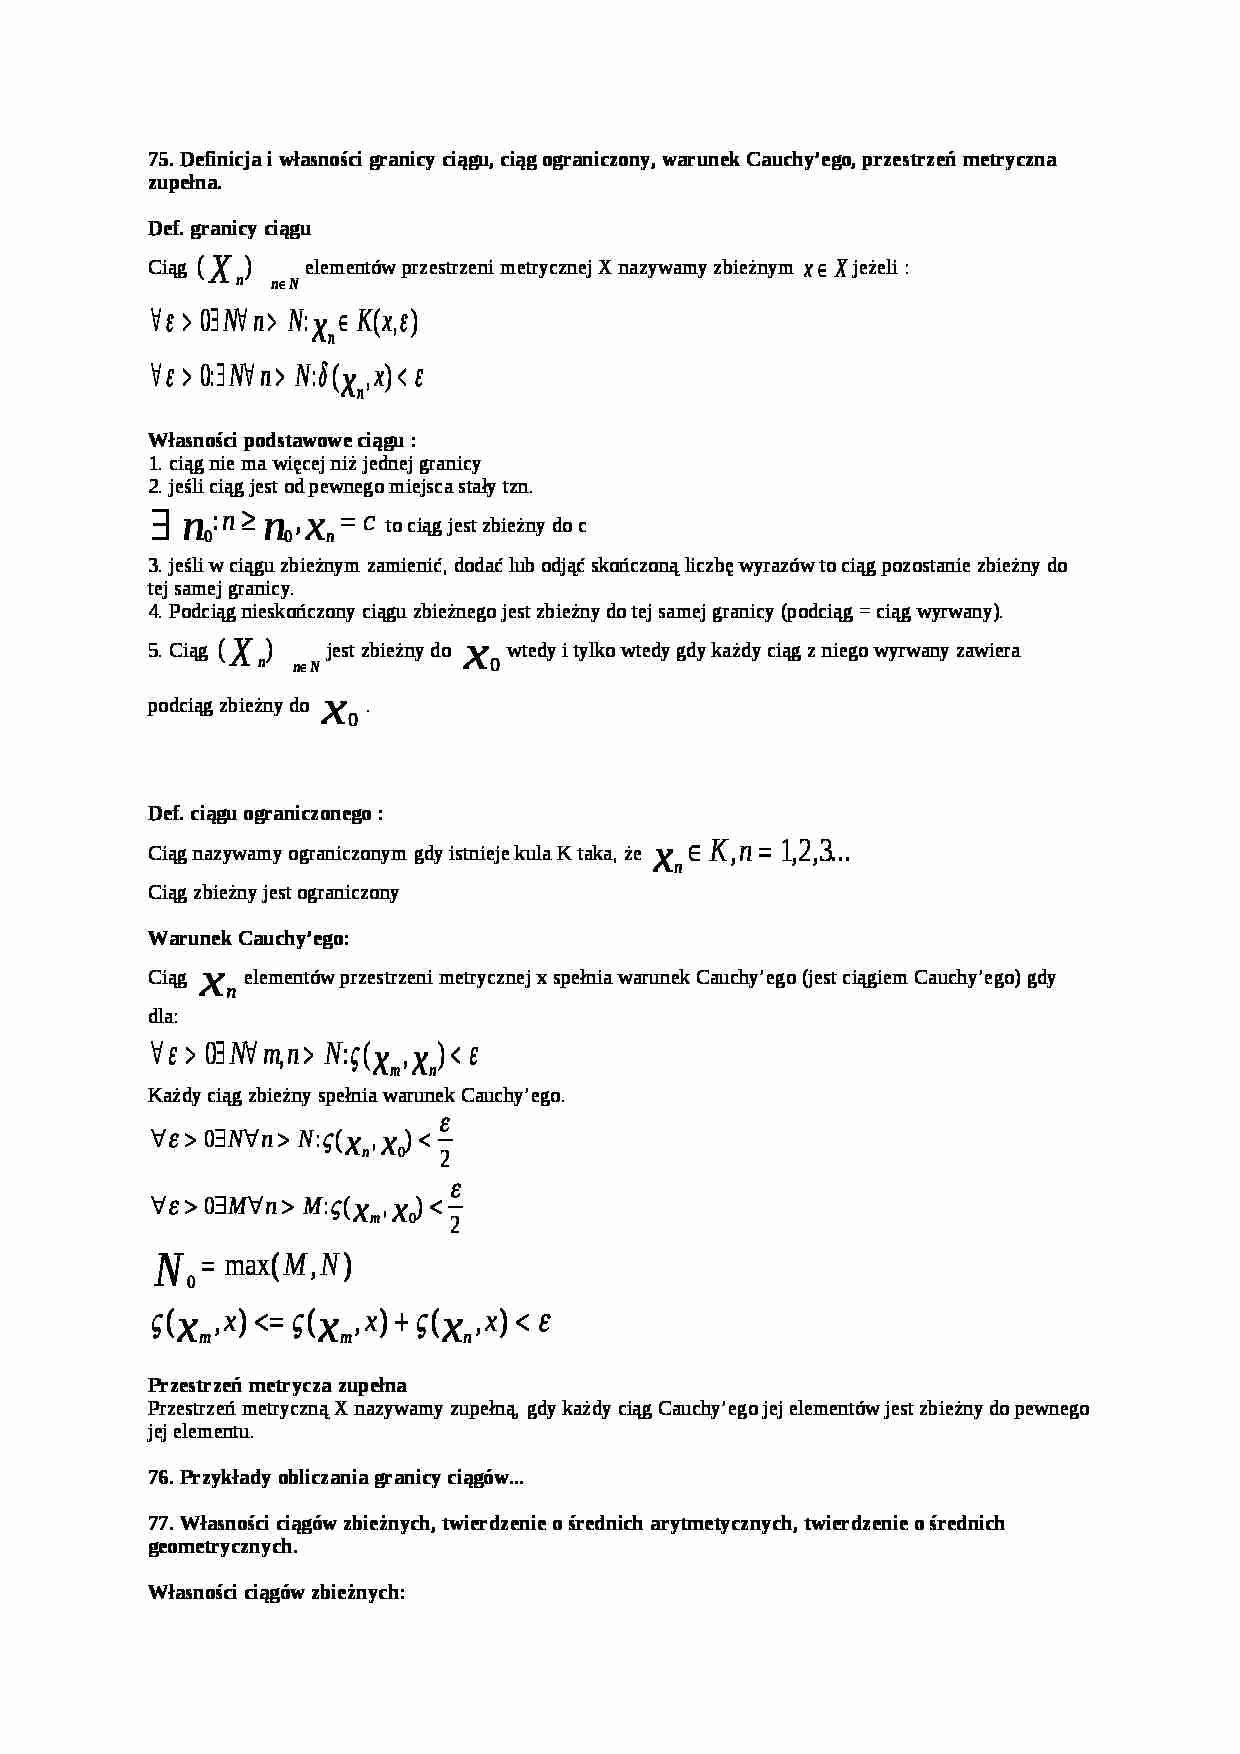 Definicja i własności granicy ciągu, ciąg ograniczony, warunek Cauchy'ego, przestrzeń metryczna zupełna - strona 1